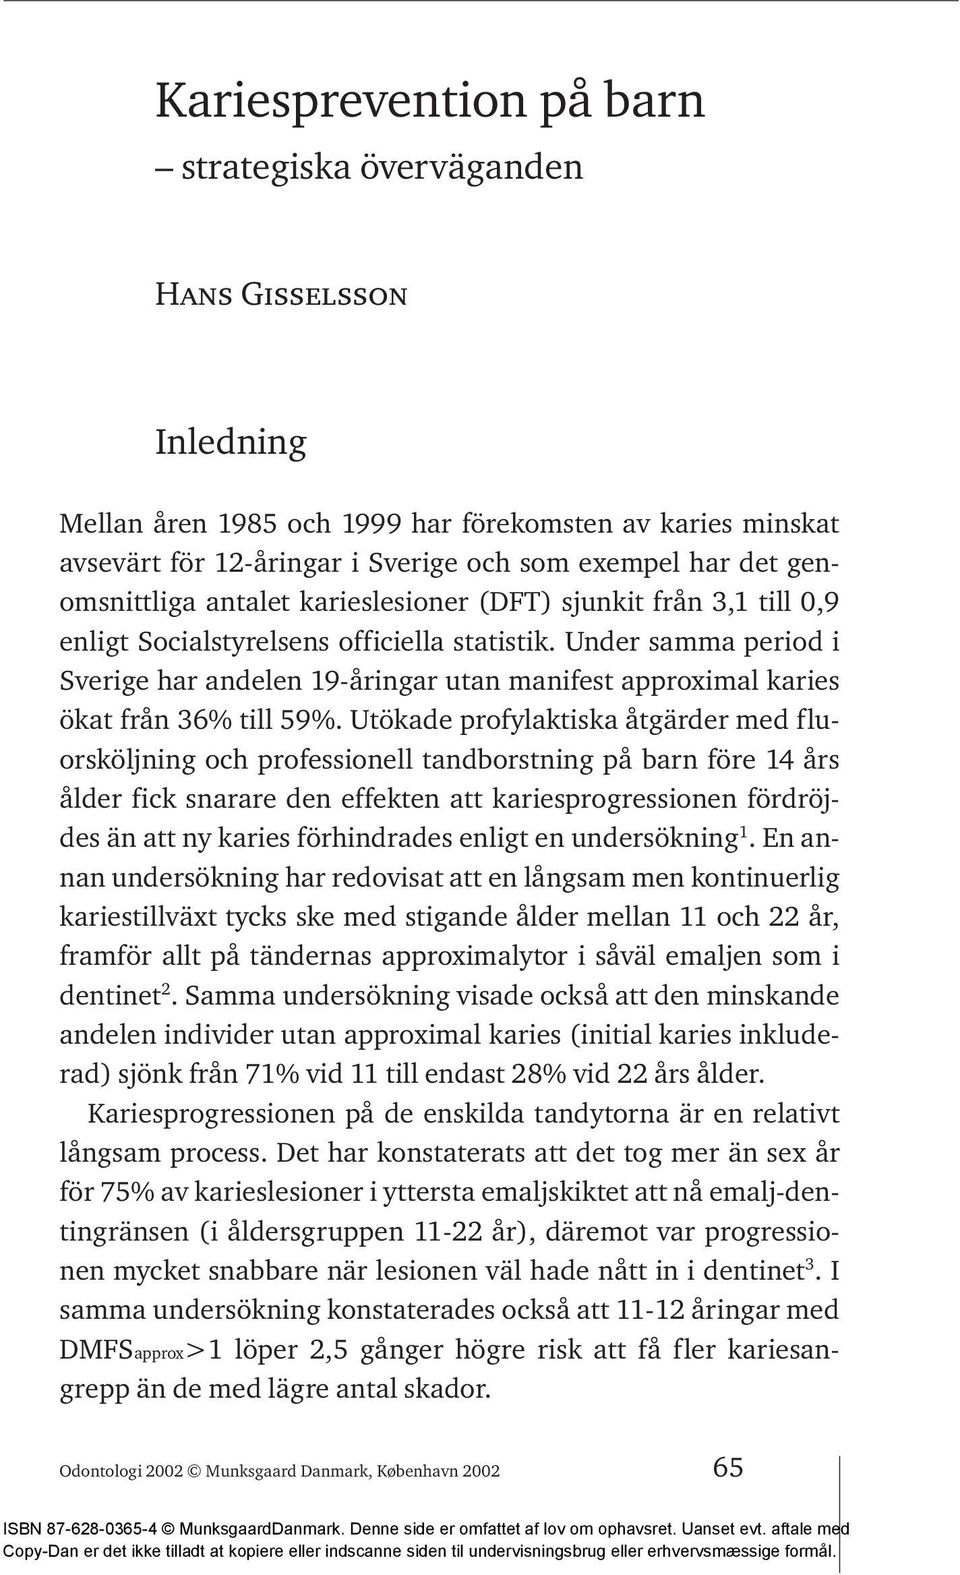 Under samma period i Sverige har andelen 19-åringar utan manifest approximal karies ökat från 36% till 59%.